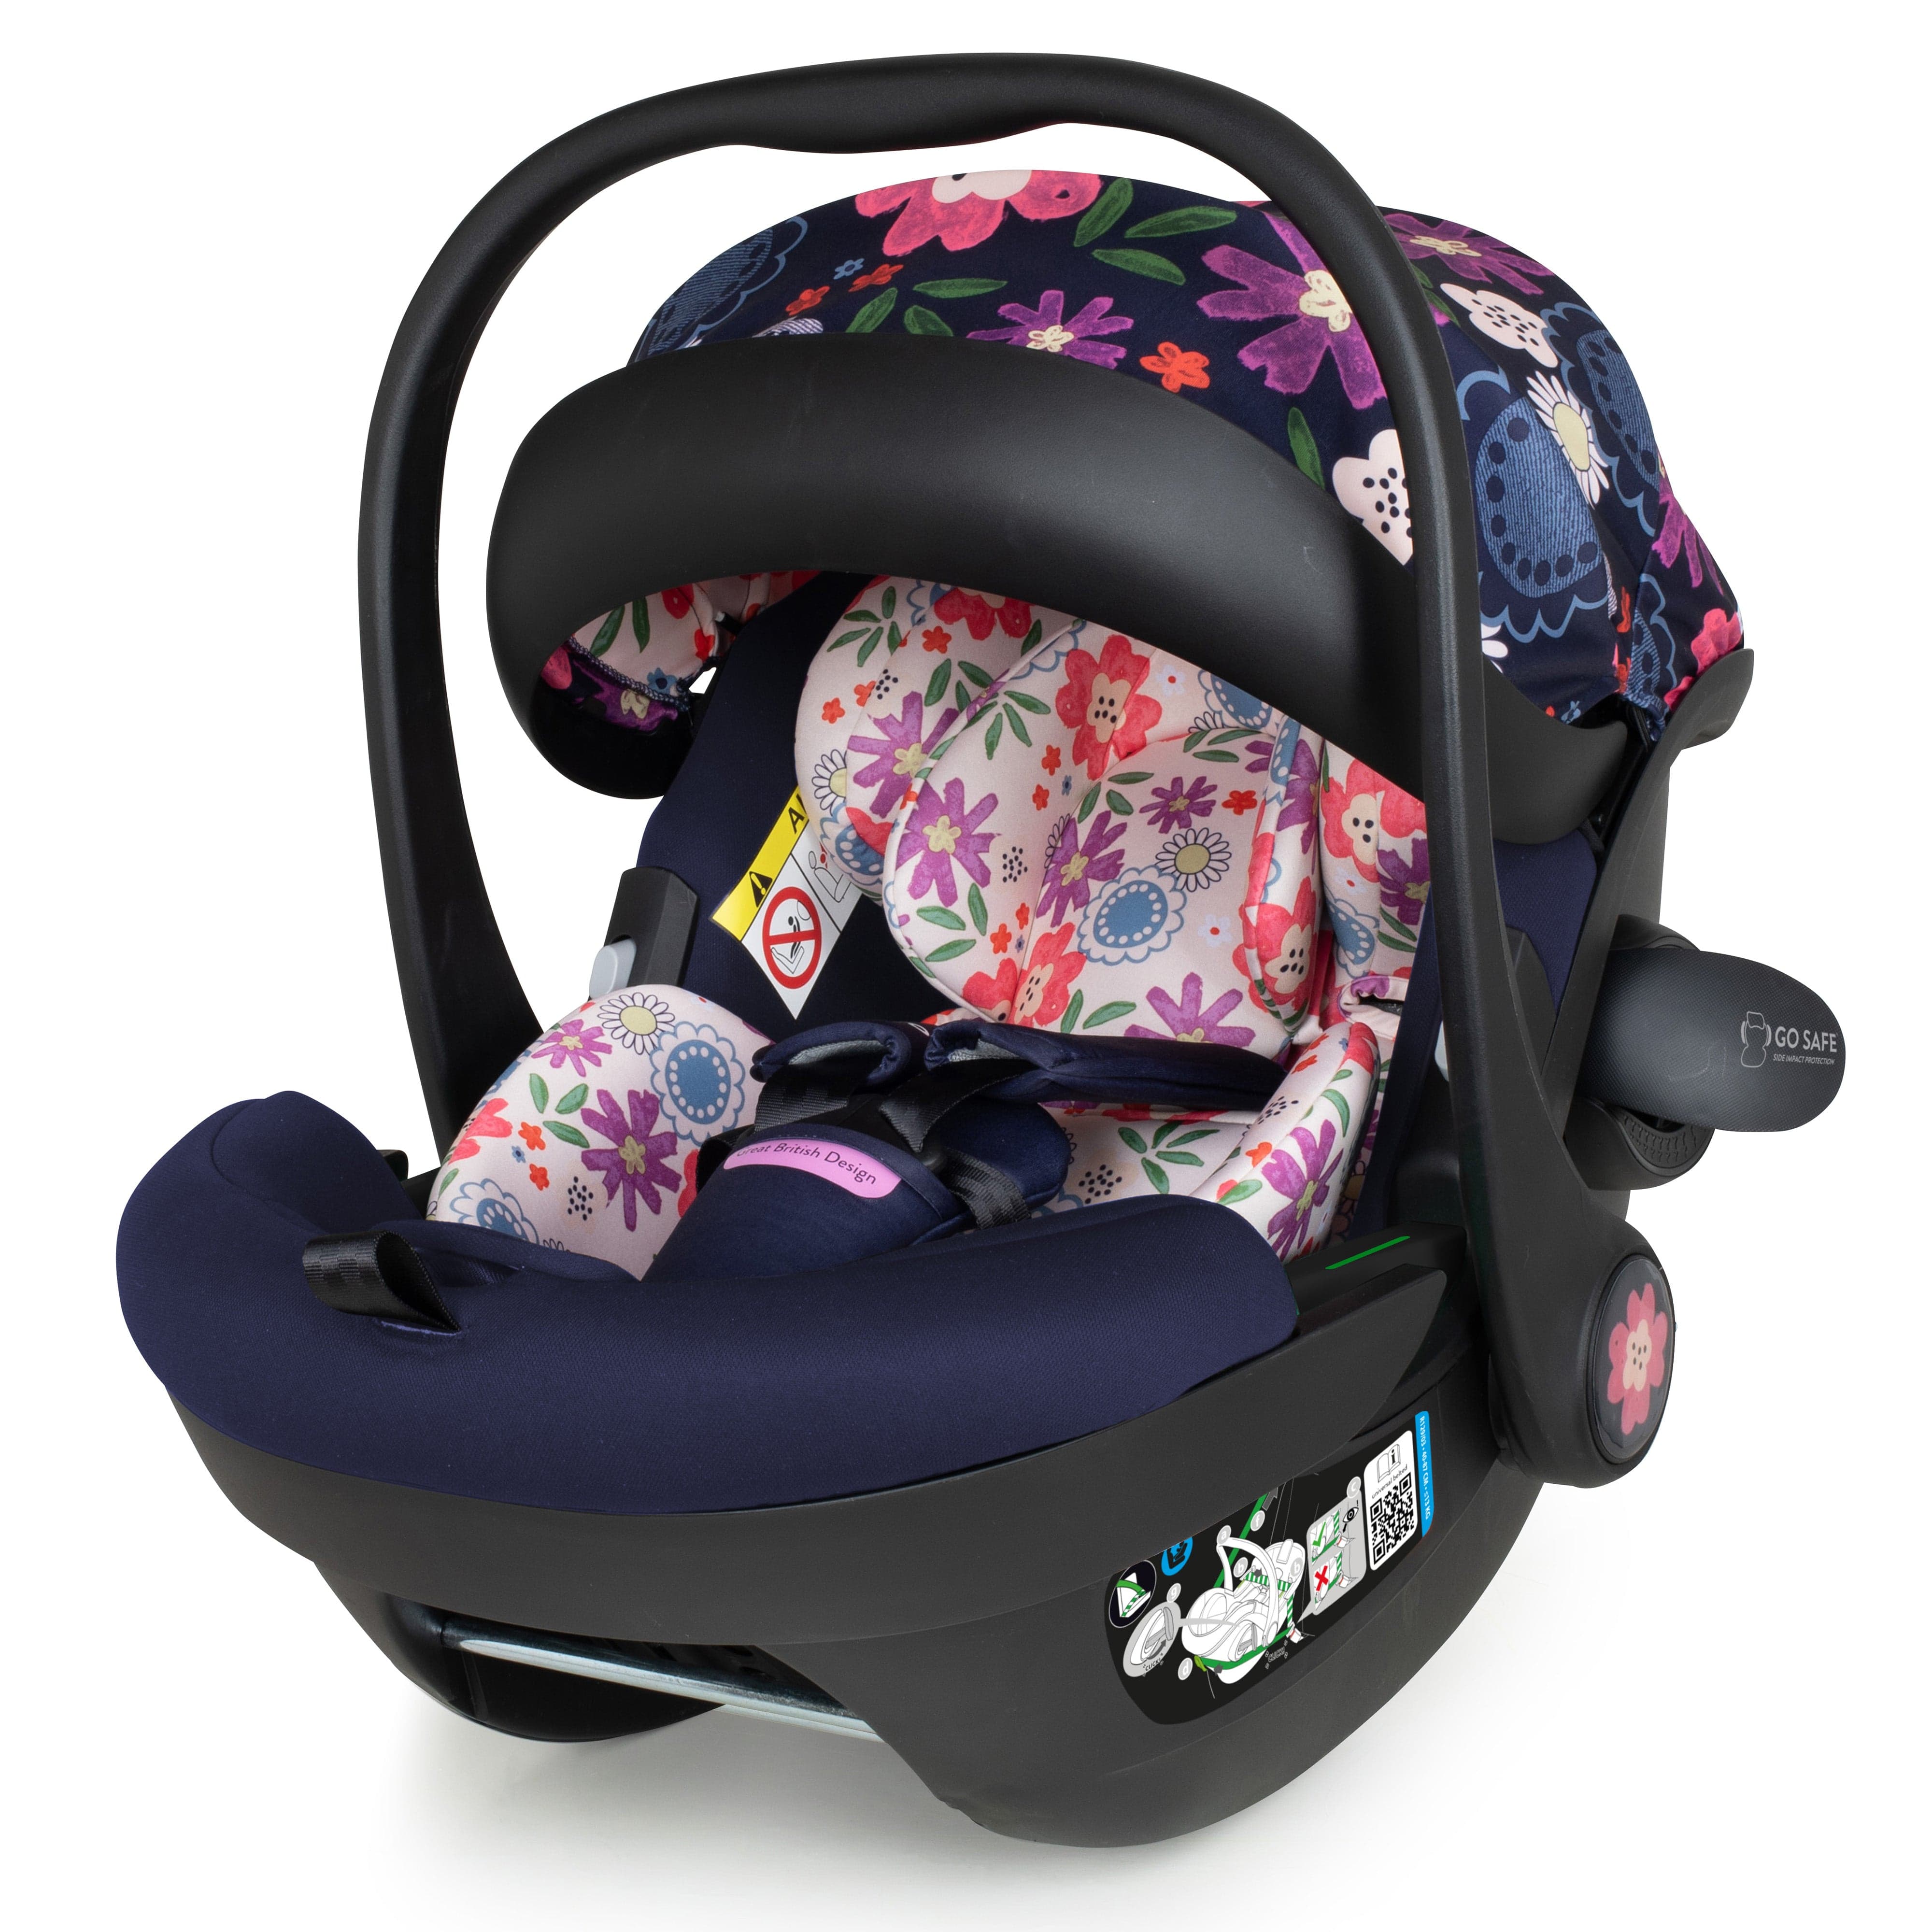 Cosatto baby car seats Cosatto Acorn i-Size Car Seat Dalloway CT5136